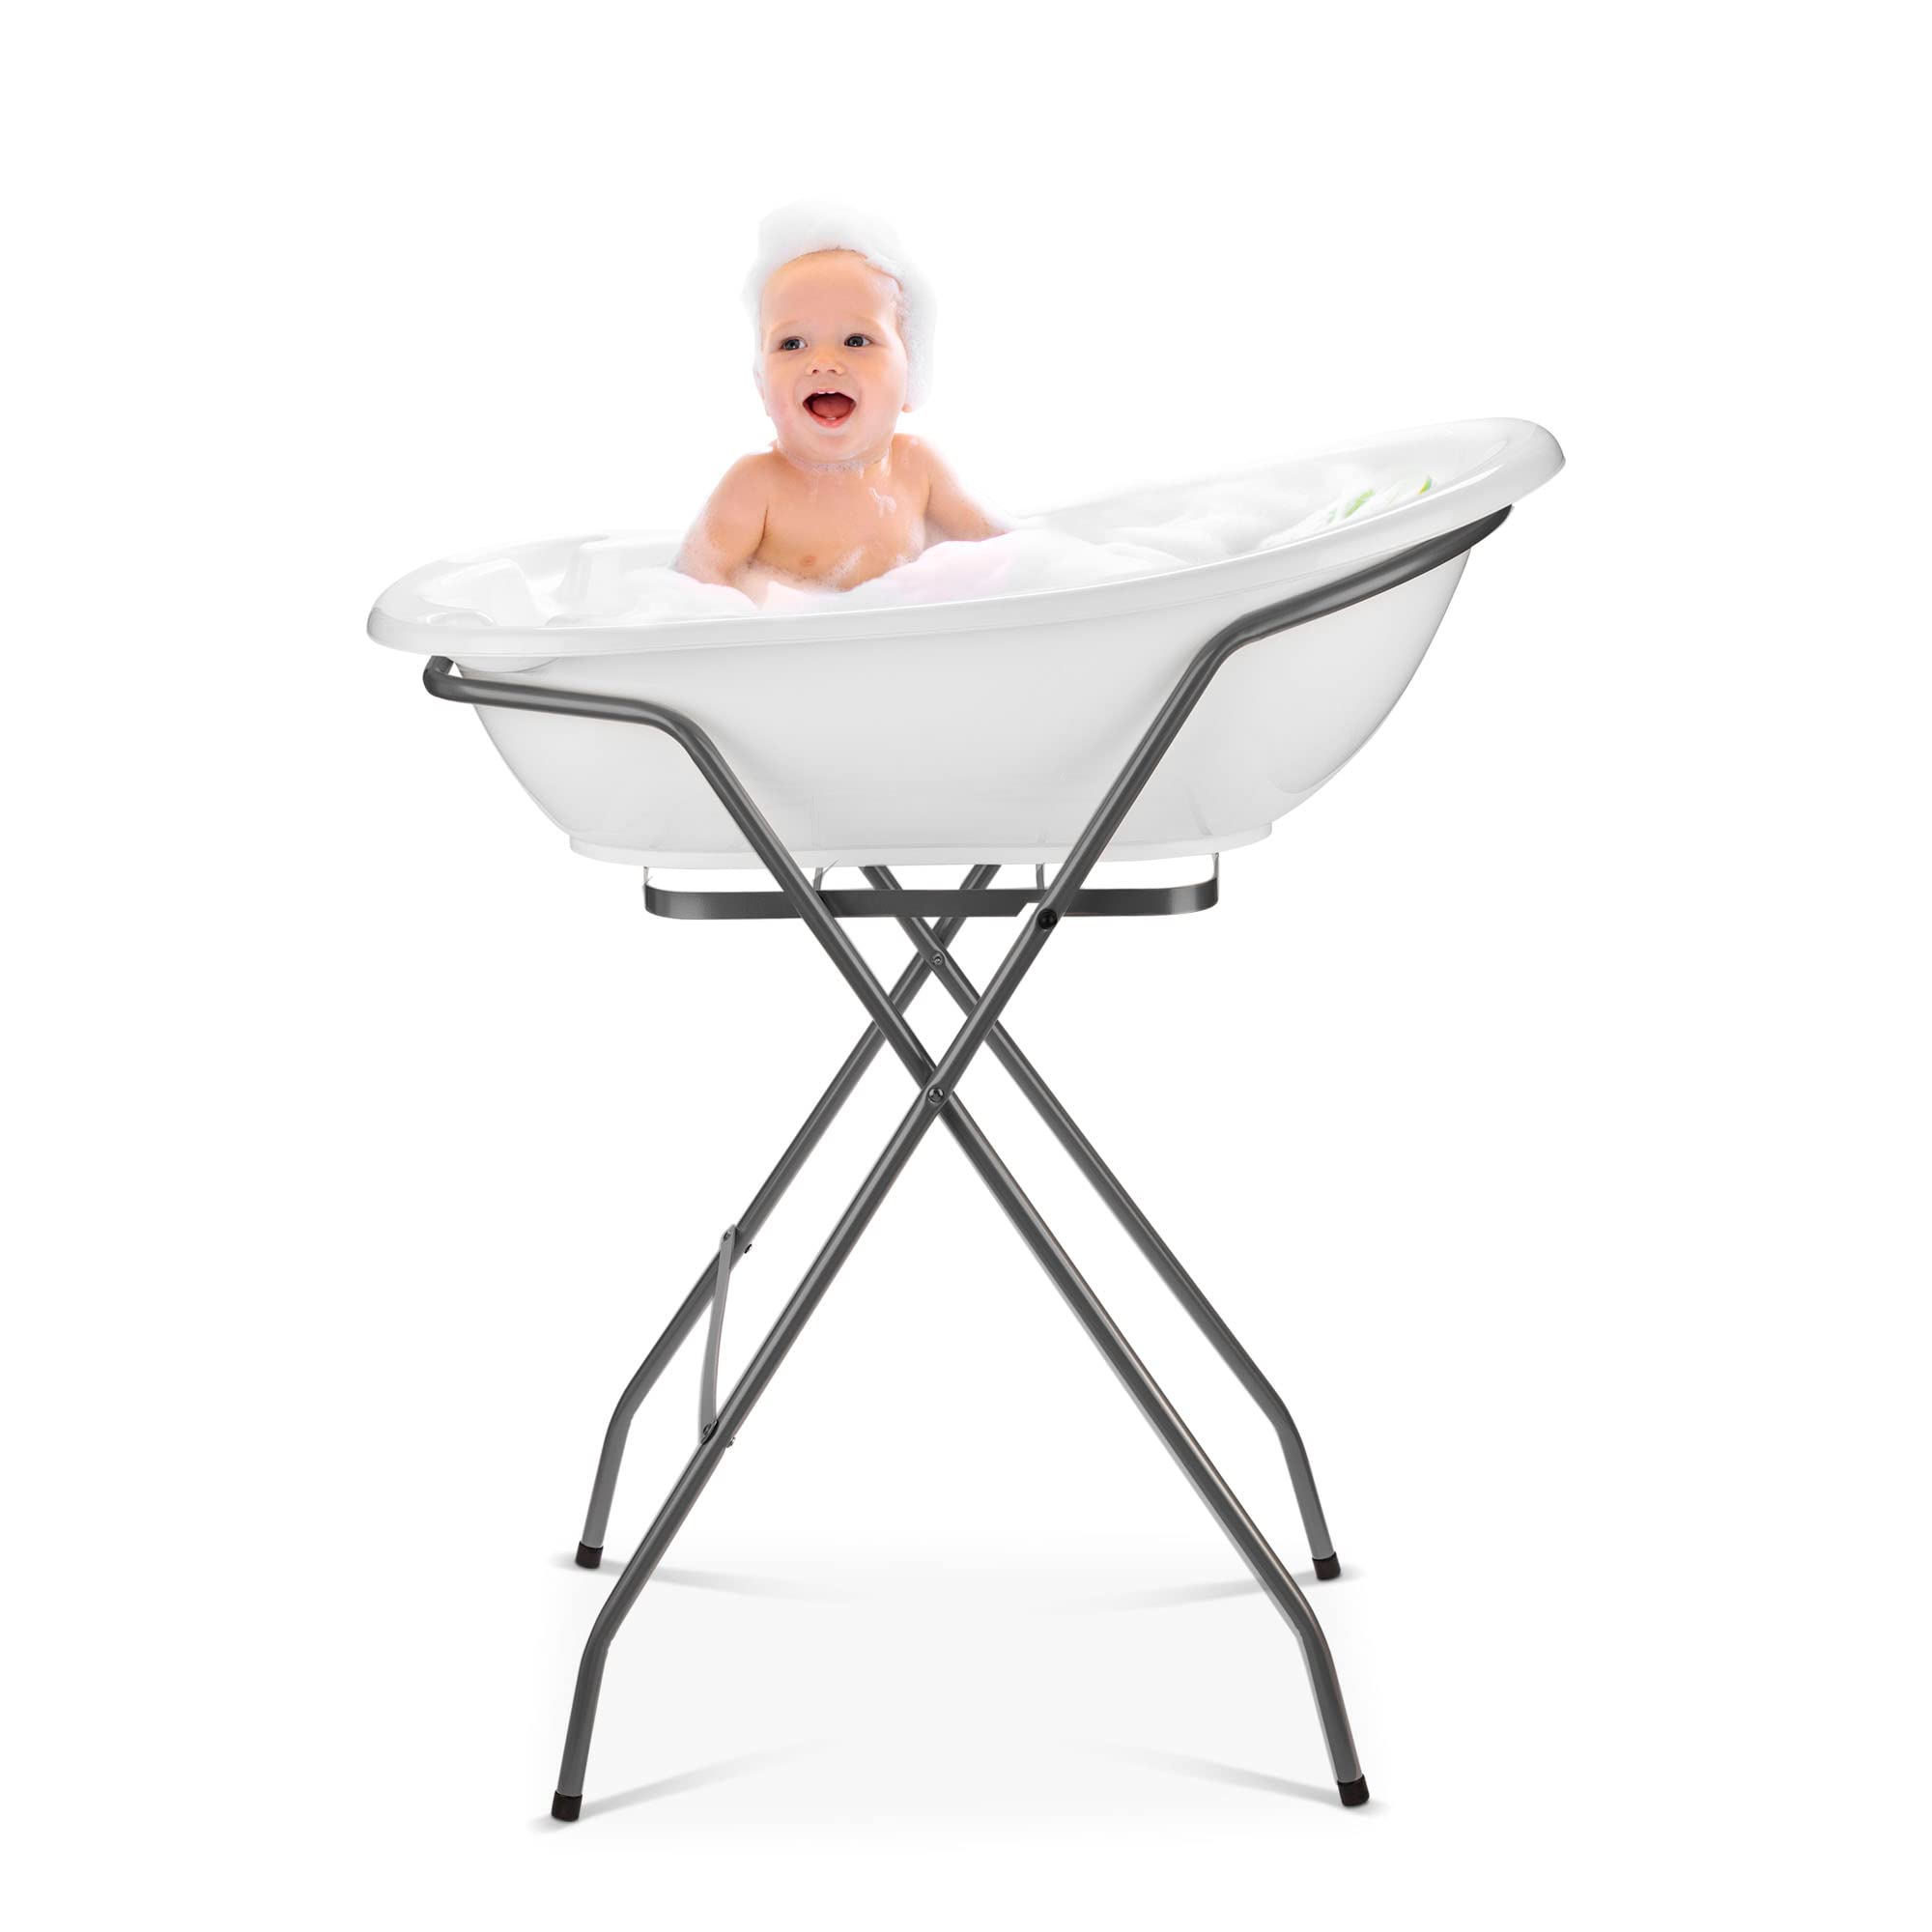 Baby Badewanne mit Gestell 4 Set TÜV Rheinland zertifiziert! Babybadewannen + Baby Badewannensitz +Abfluss + Gestell - Babywanne mit Ständer! Baby Pflegeset für Neugeborene.